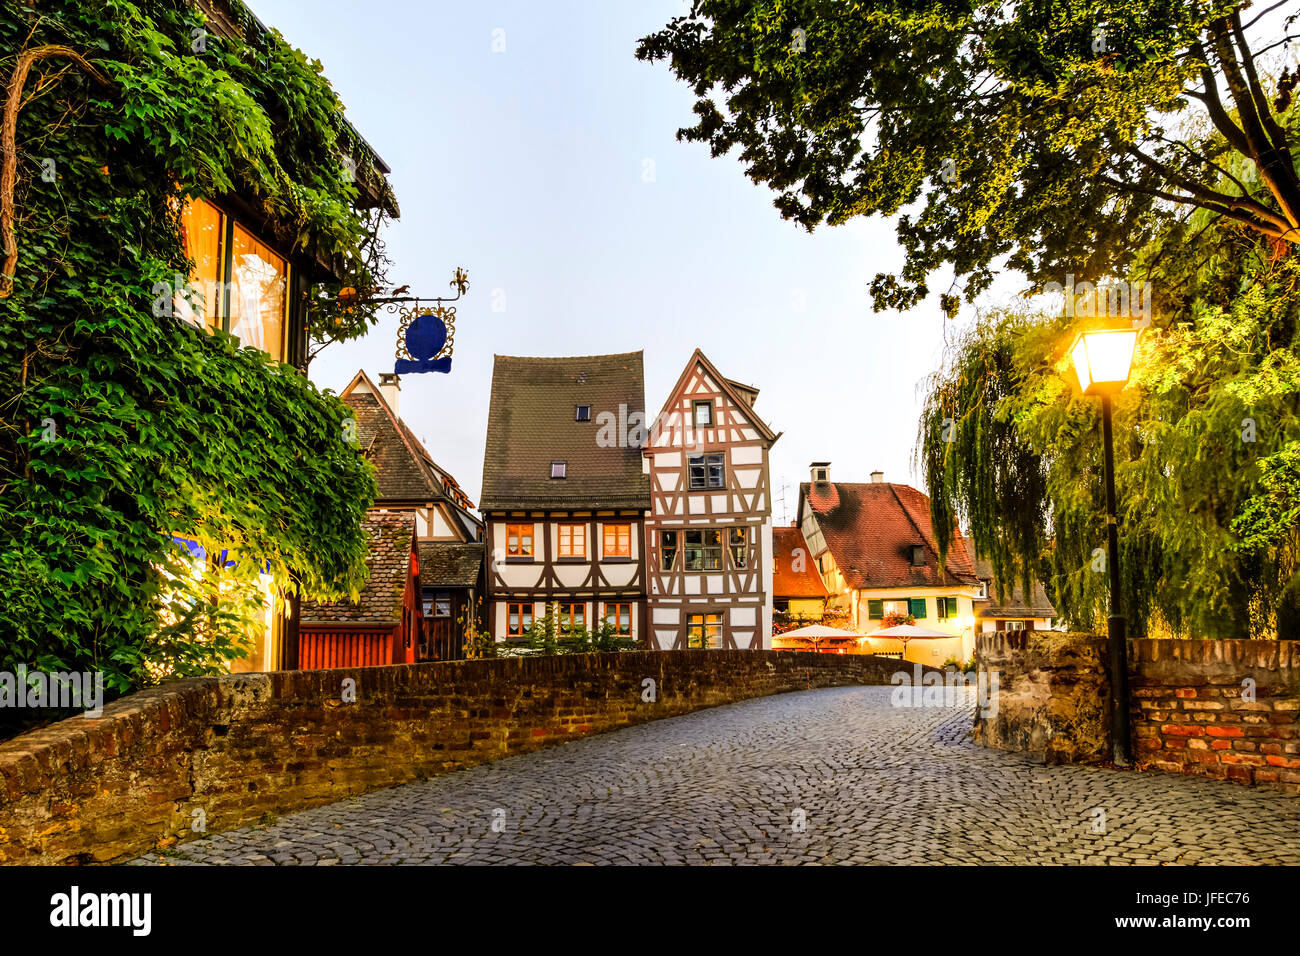 Old Street en Ulm, Alemania Foto de stock